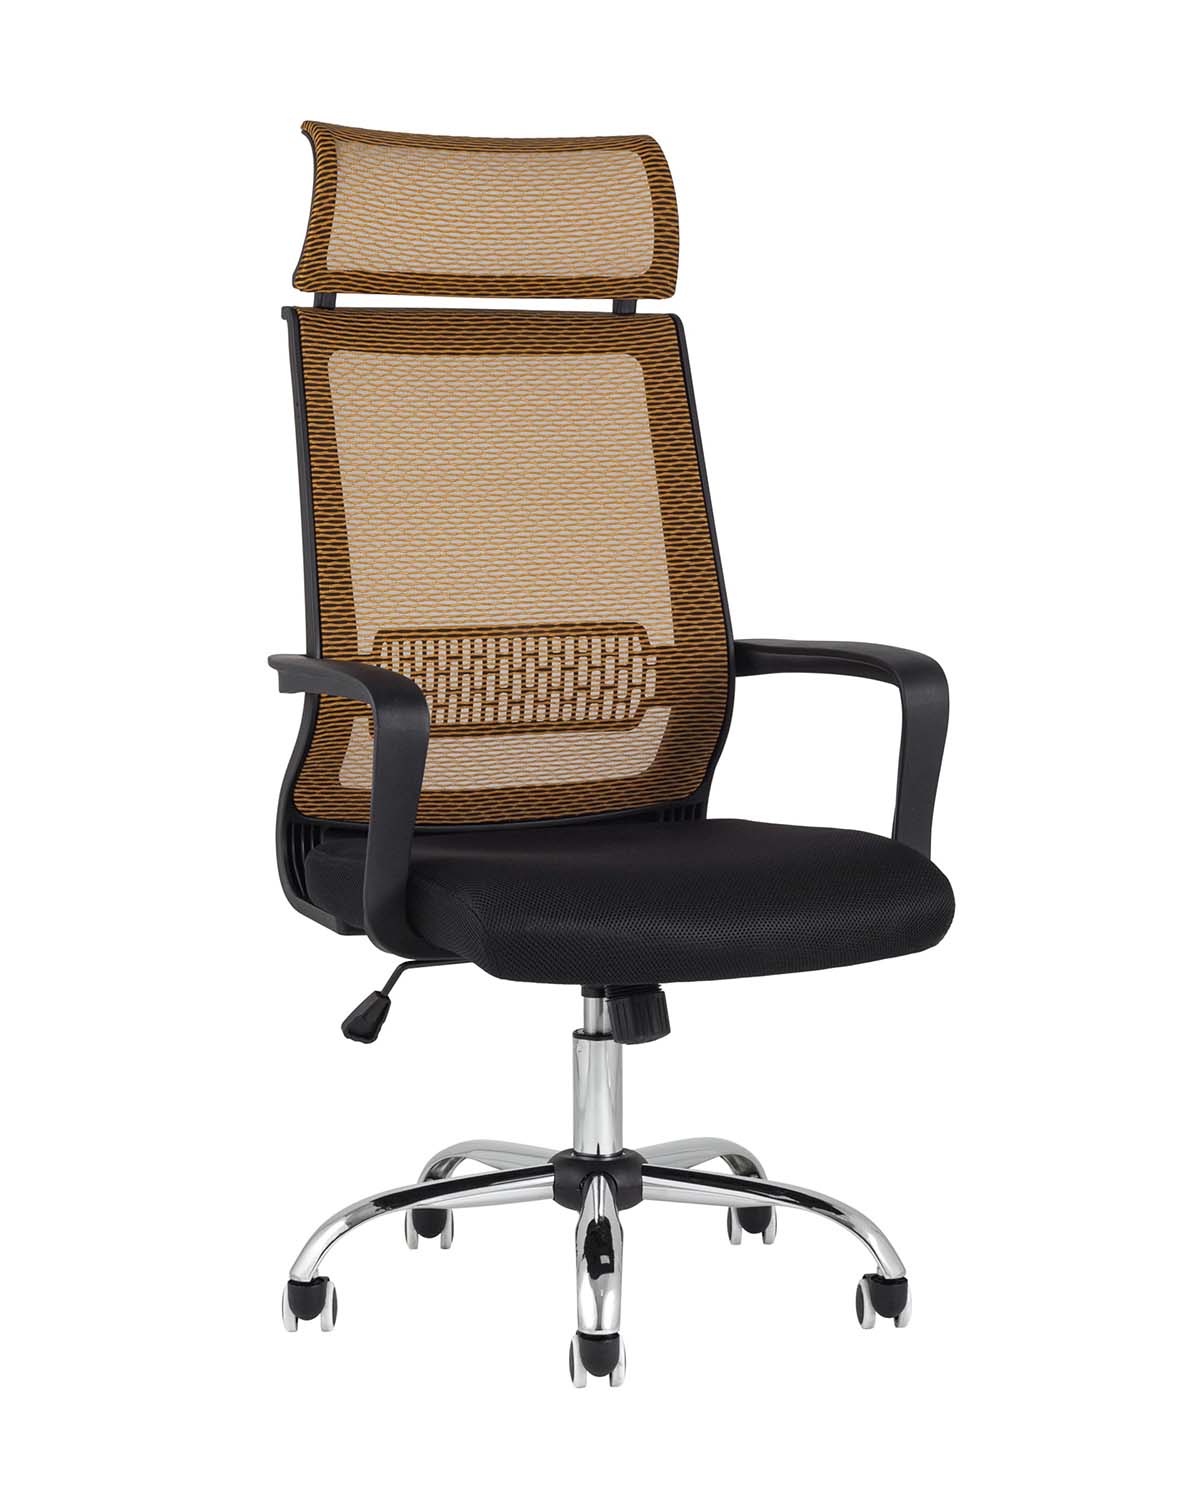 Компьютерное кресло TopChairs Style офисное оранжевое в обивке с сеткой, регулировка по высоте и механизм качания To